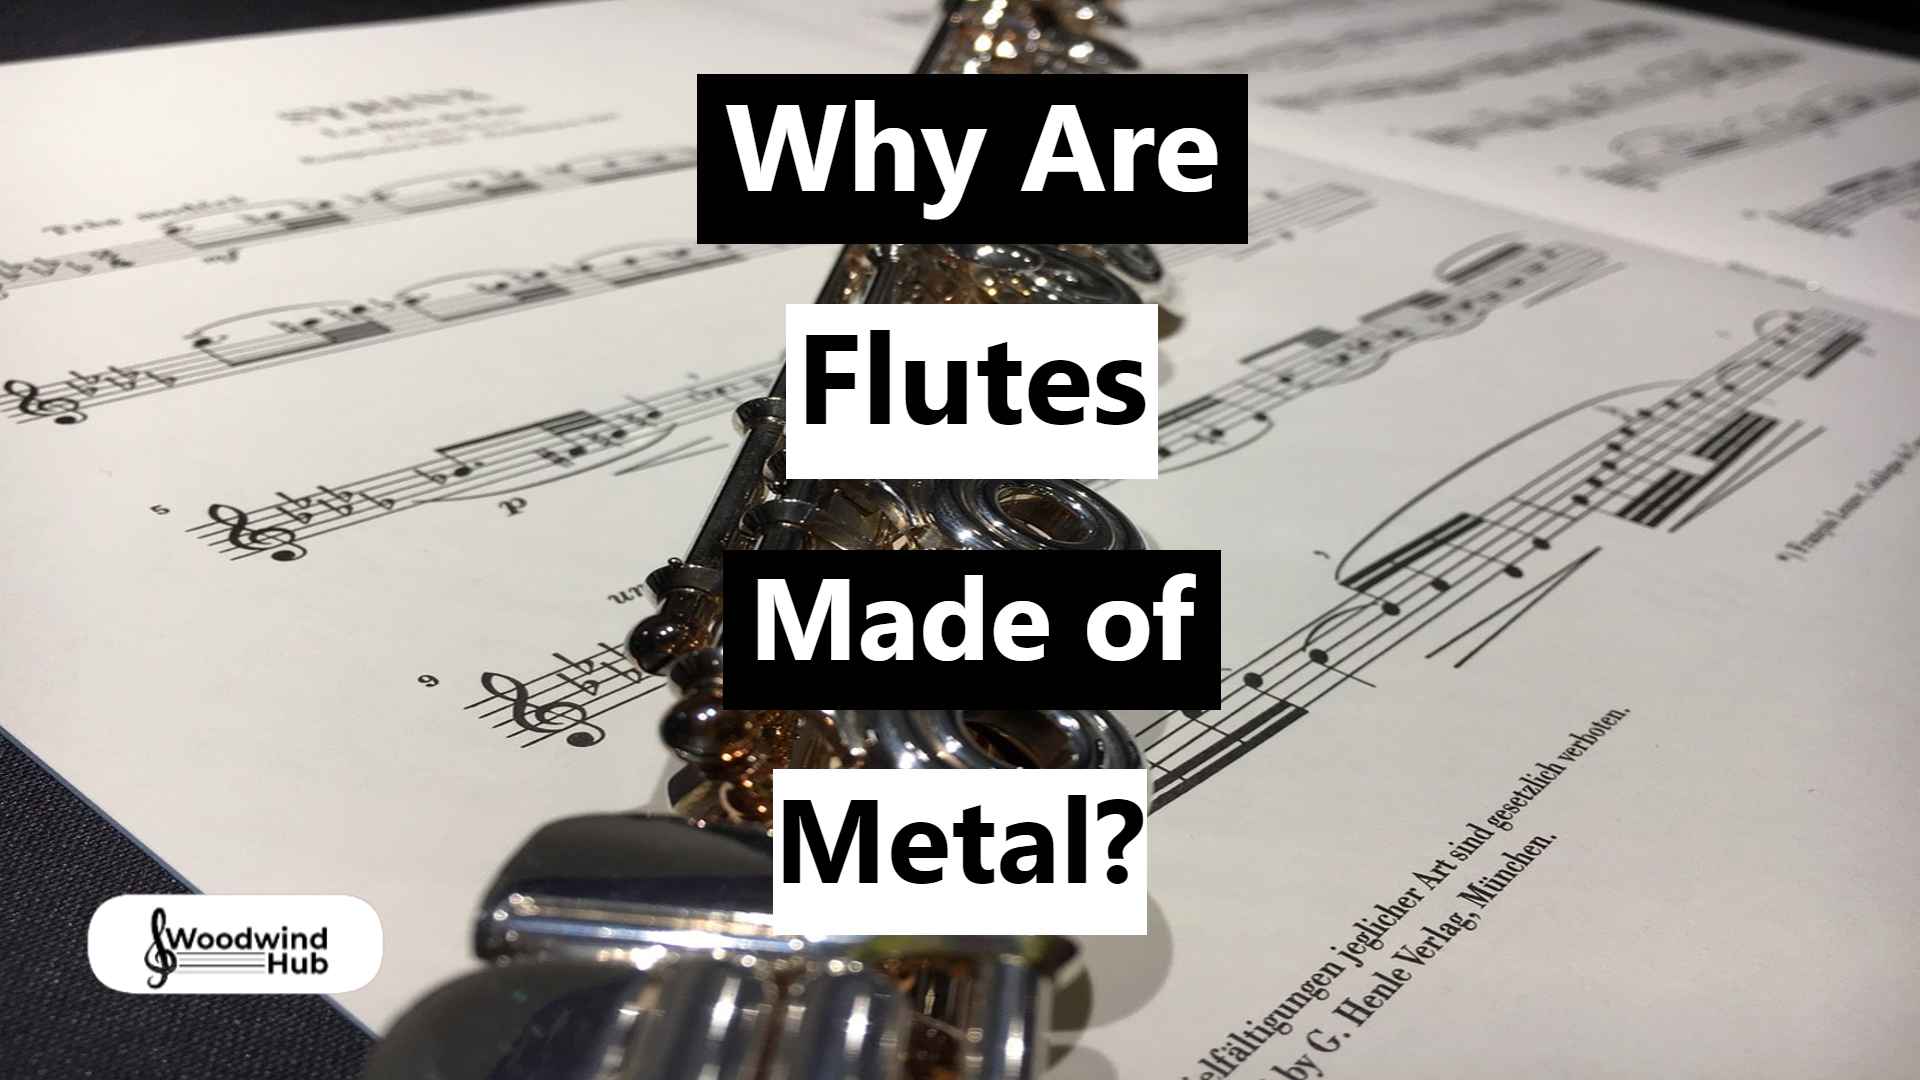 Student Flutes: Plastic vs Metal